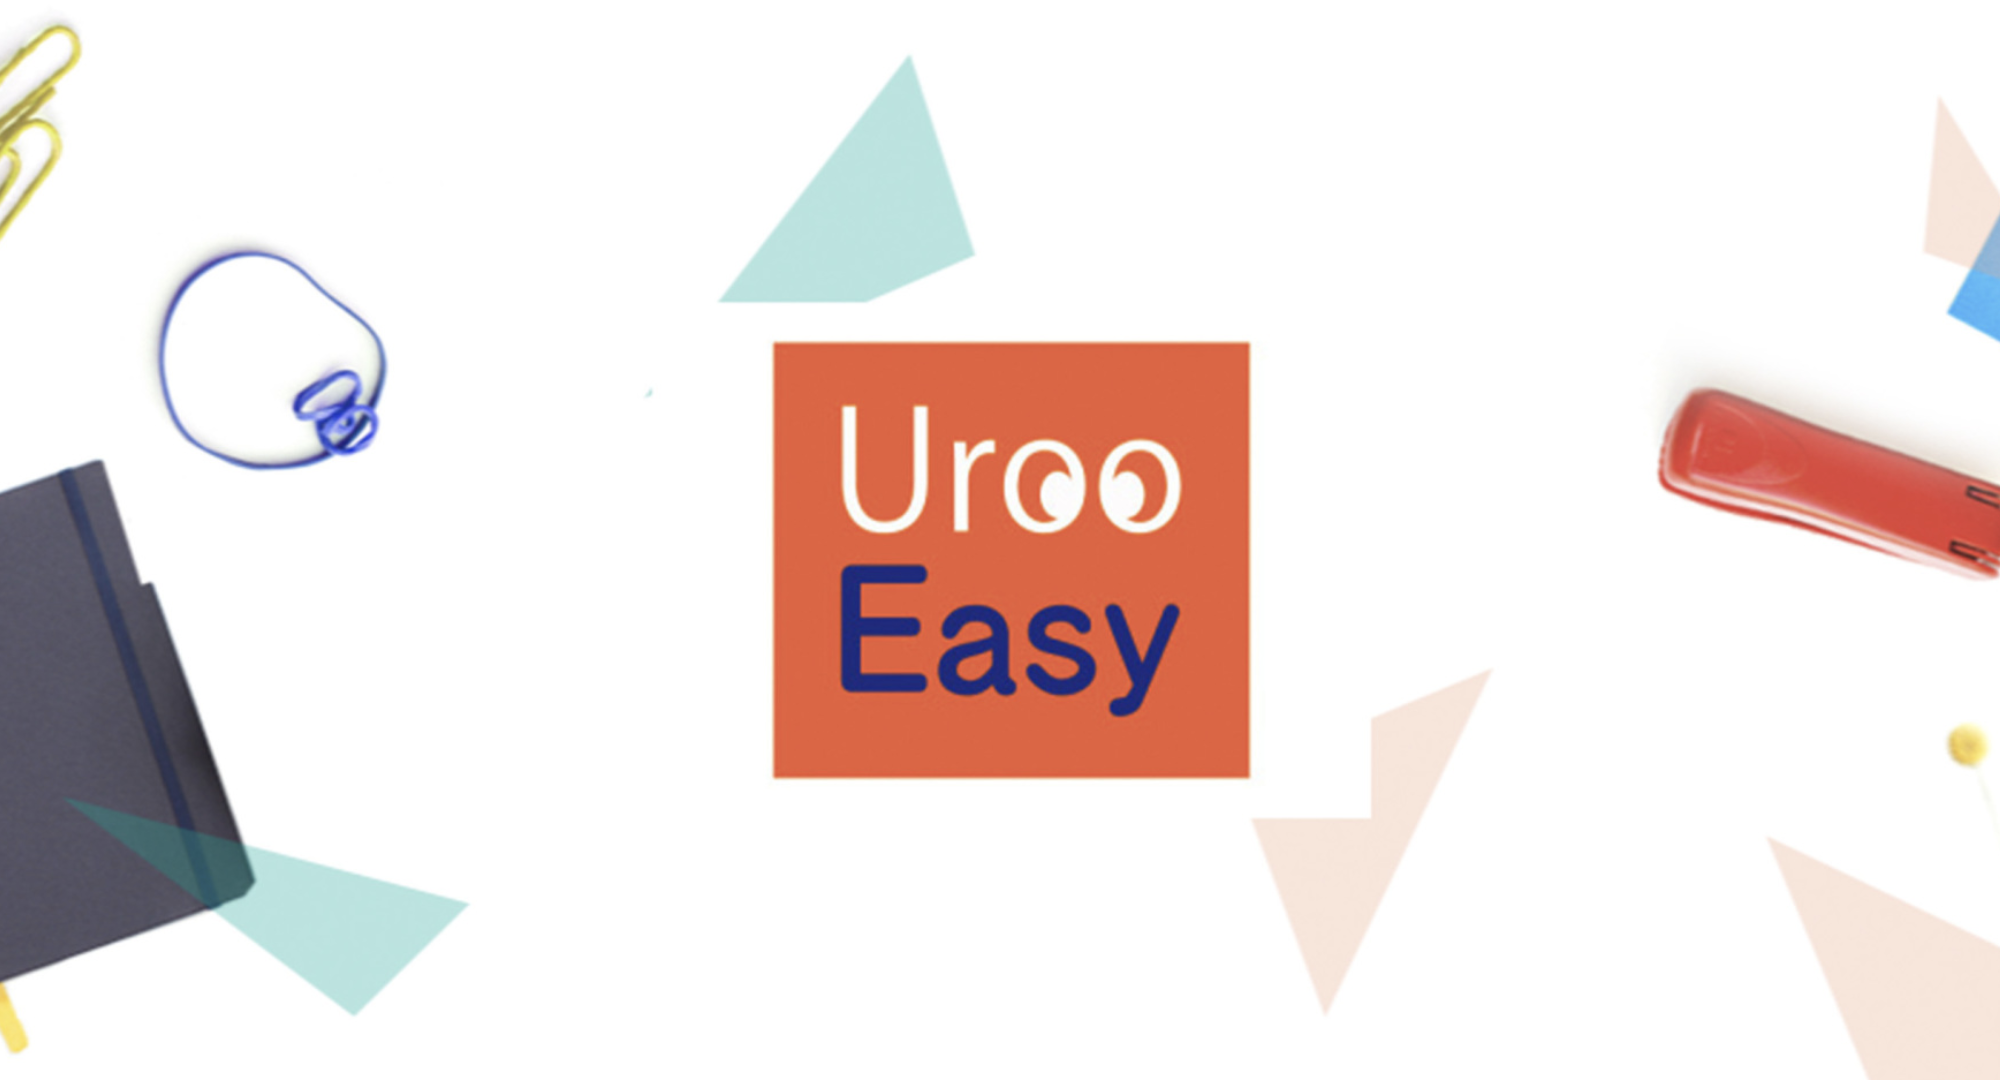 Uroo Easy（ウール－イージー）のホームページ